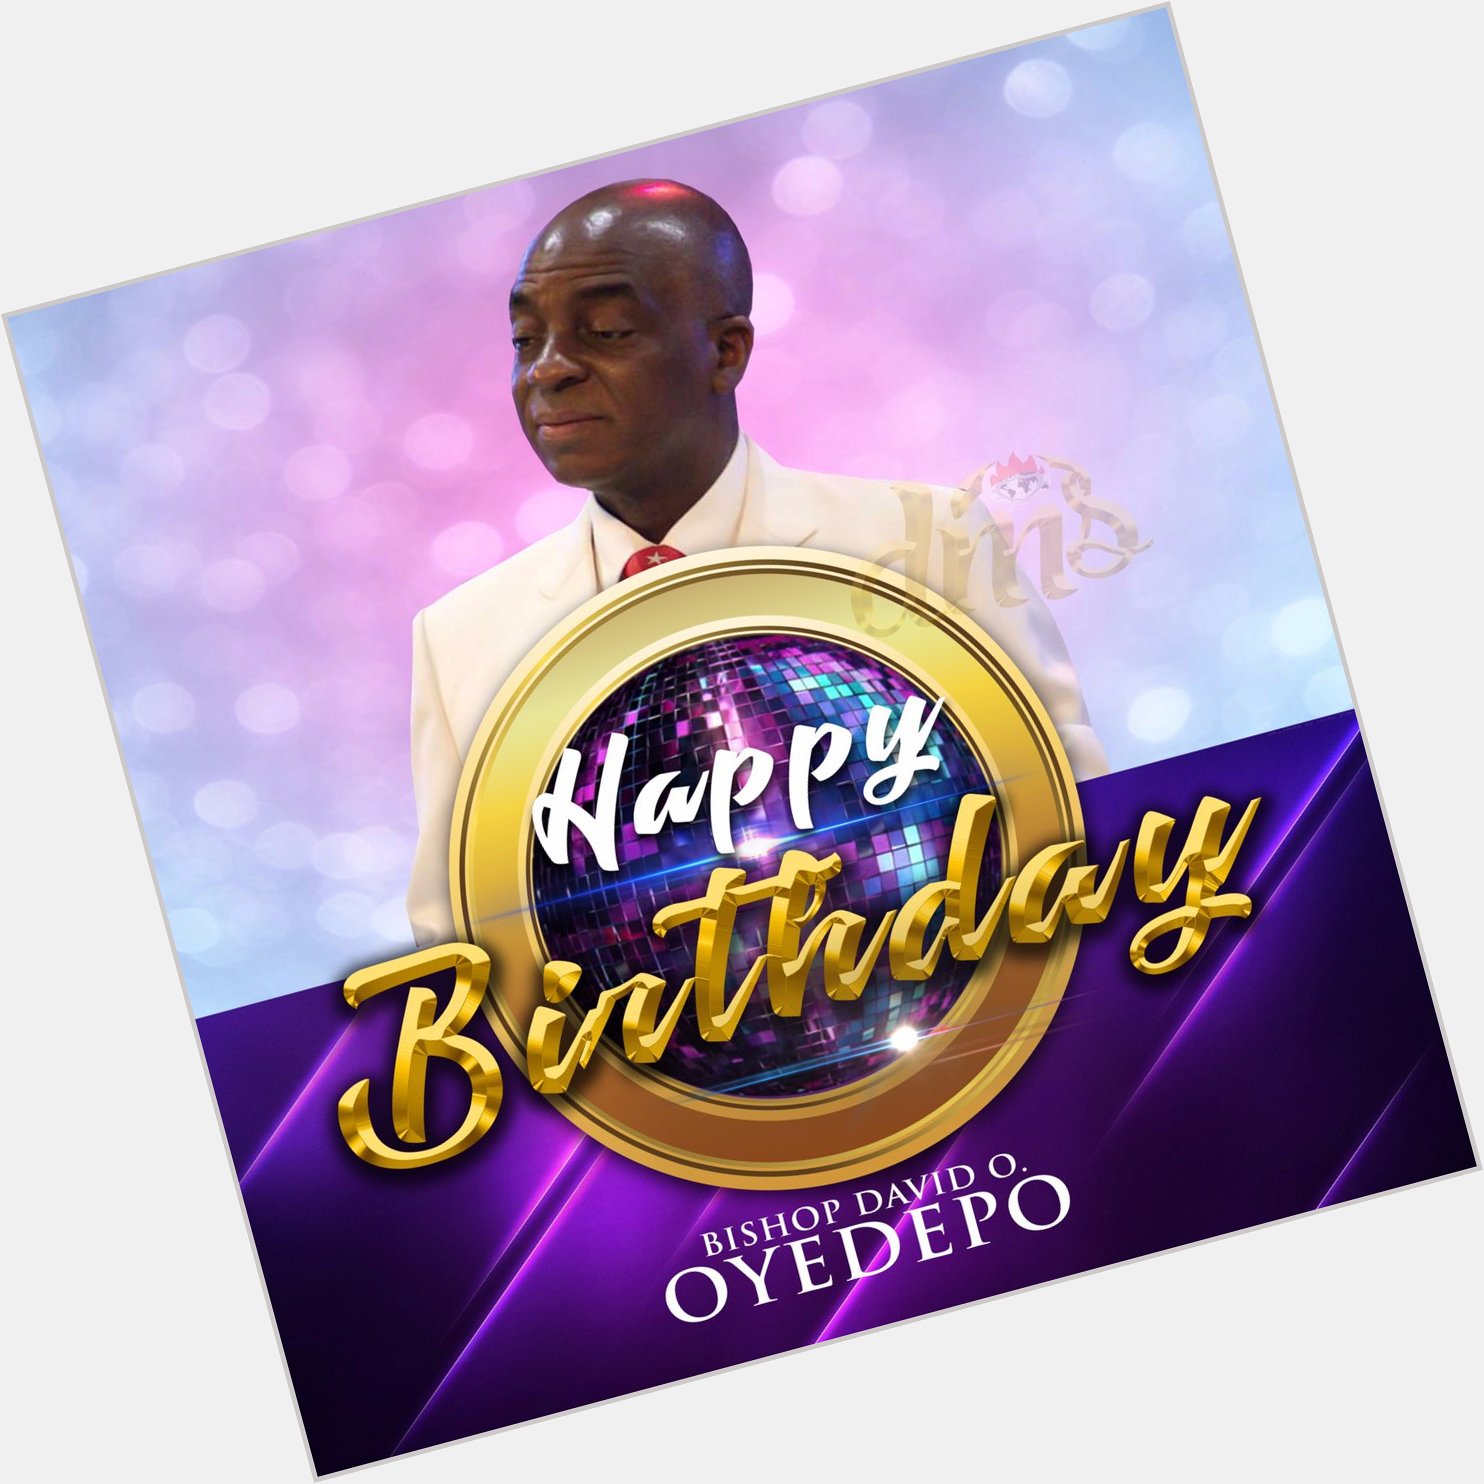 Happy birthday to God\s servant, Bishop David Oyedepo 